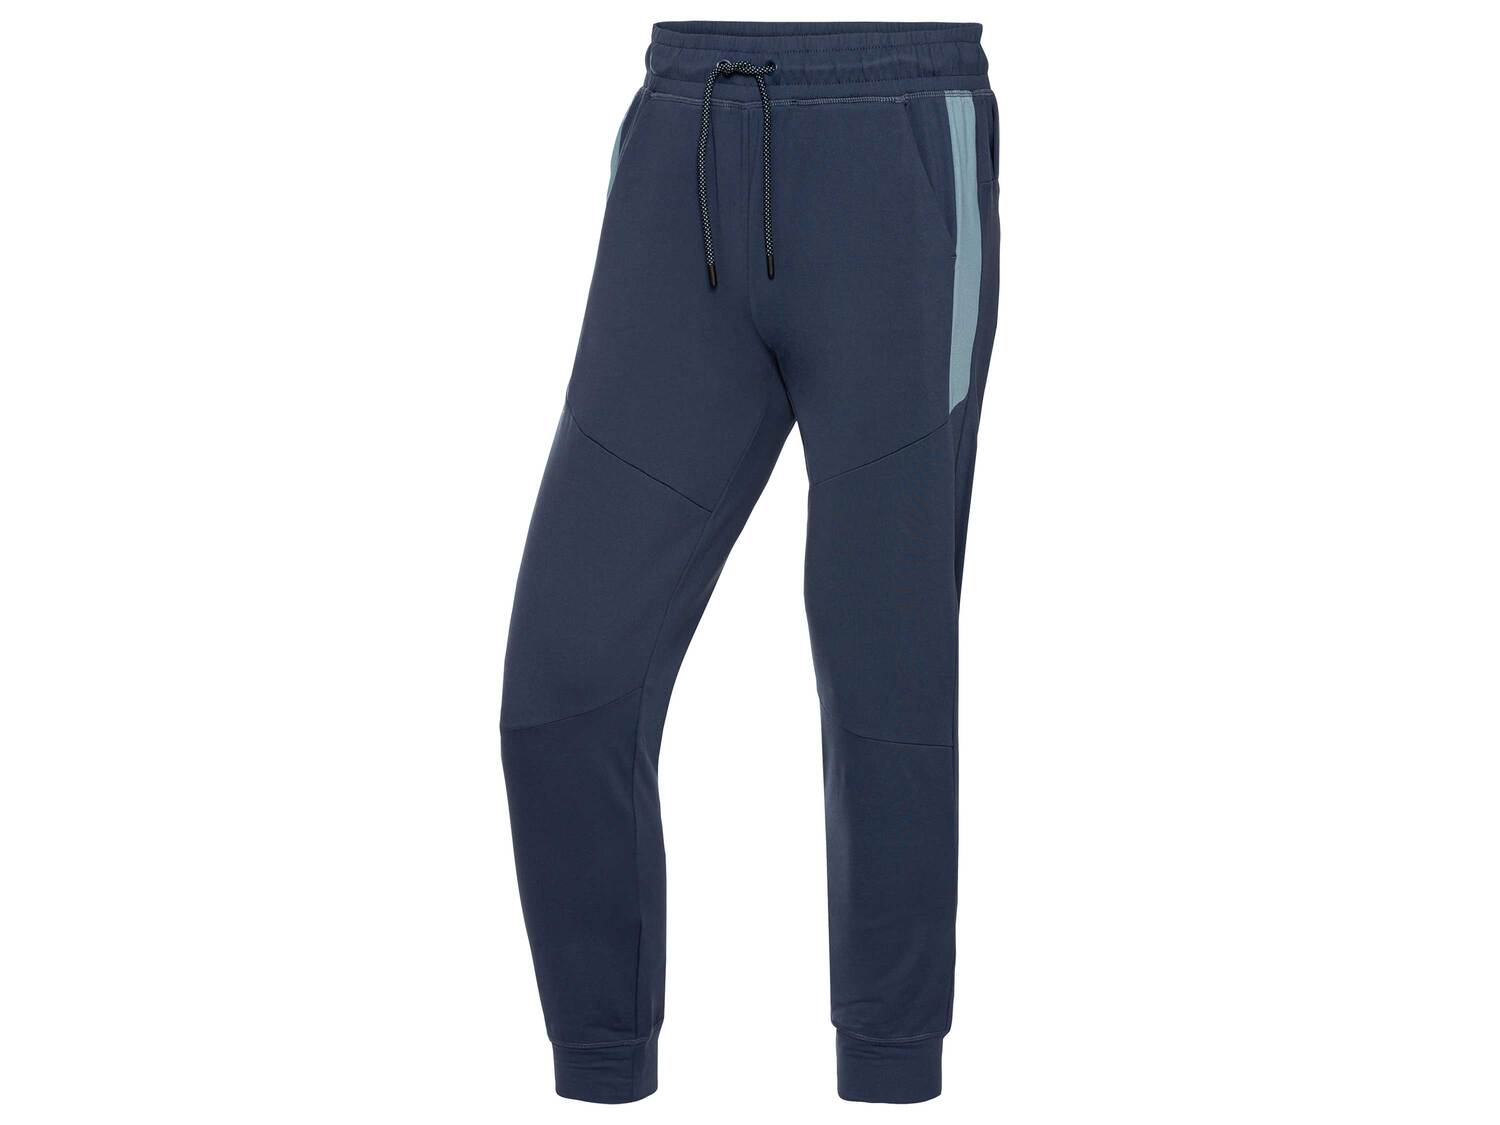 Pantalon technique , le prix 8.99 &#8364; 
- Du S au XL selon mod&egrave;le
- ...